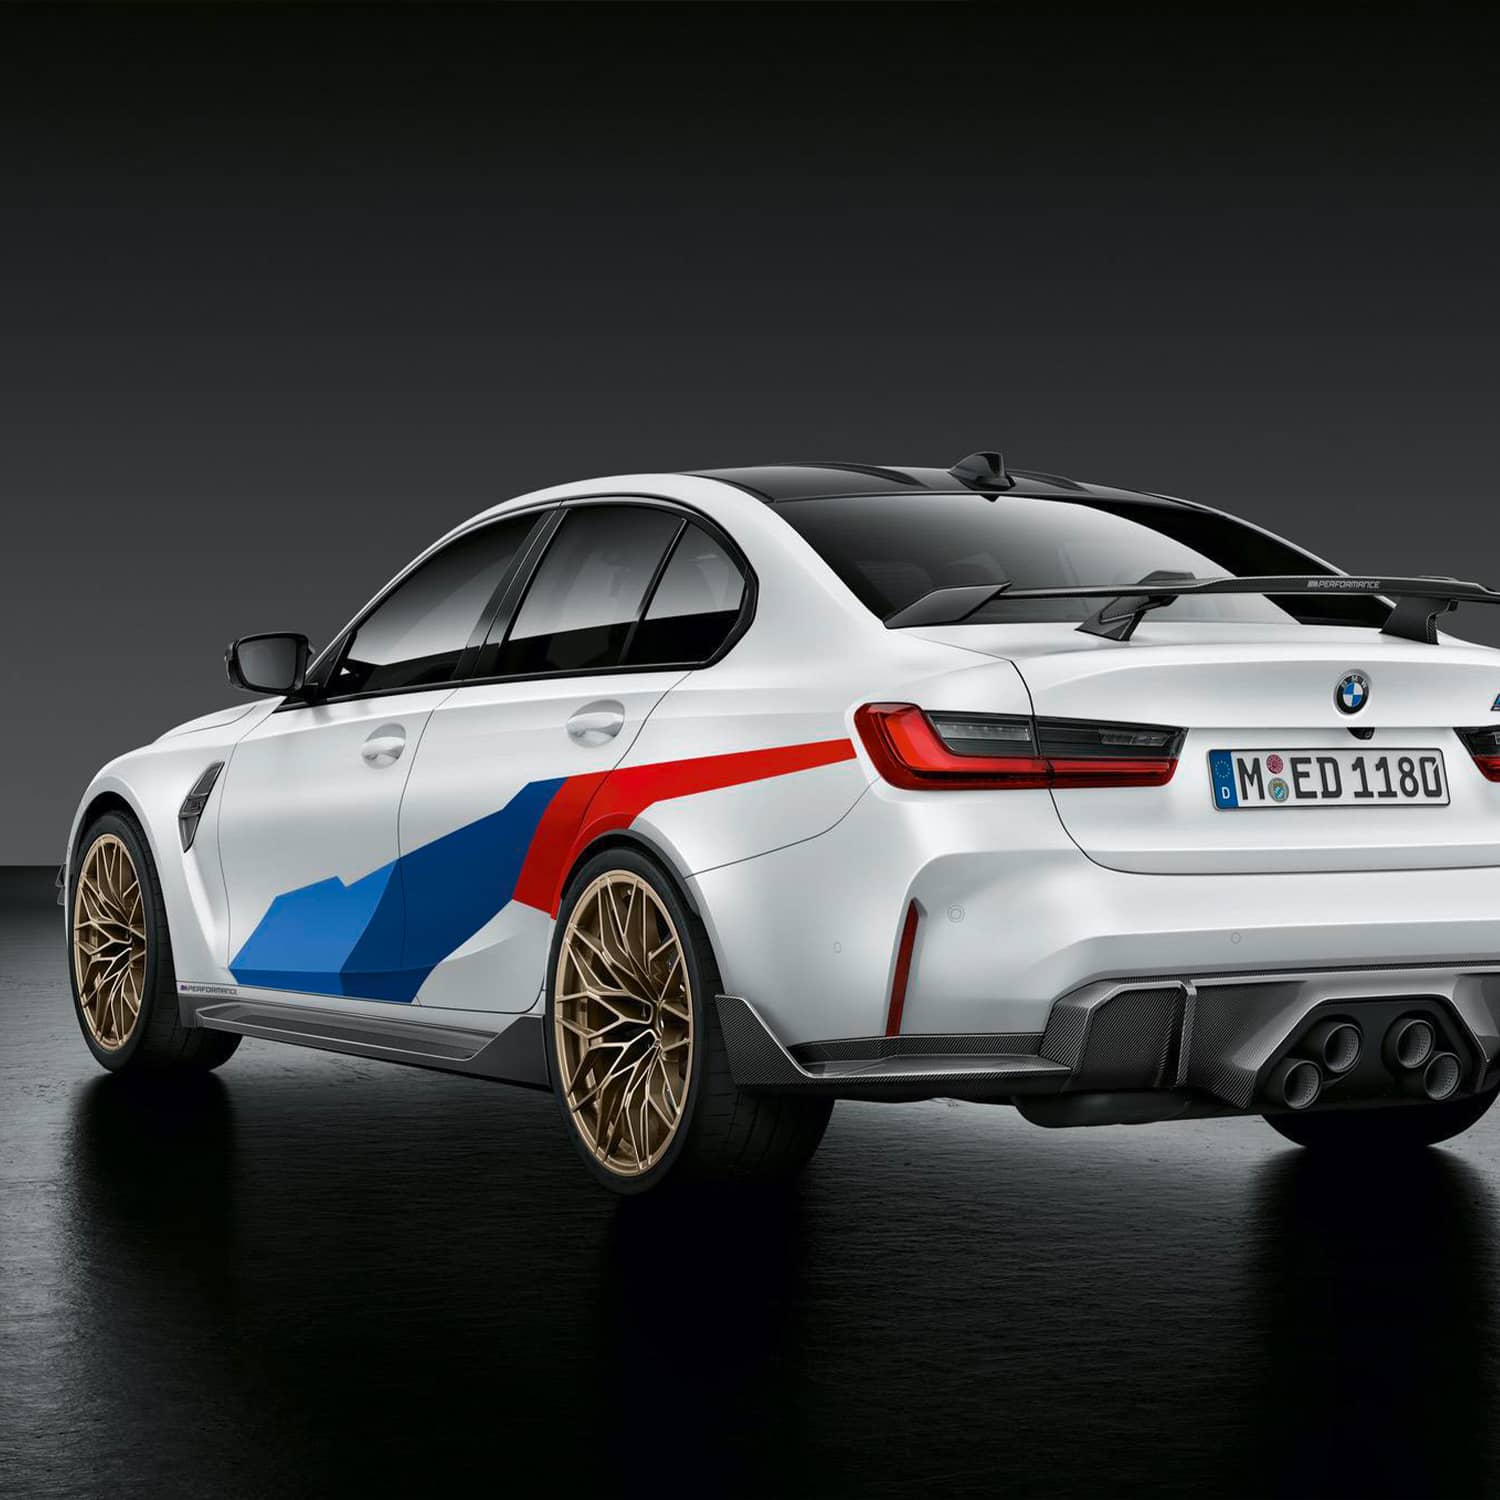 M Performance Carbon Spiegelkappen für BMW F8x M3 / M4 (Competition / CS /  GTS) - MANHART Performance